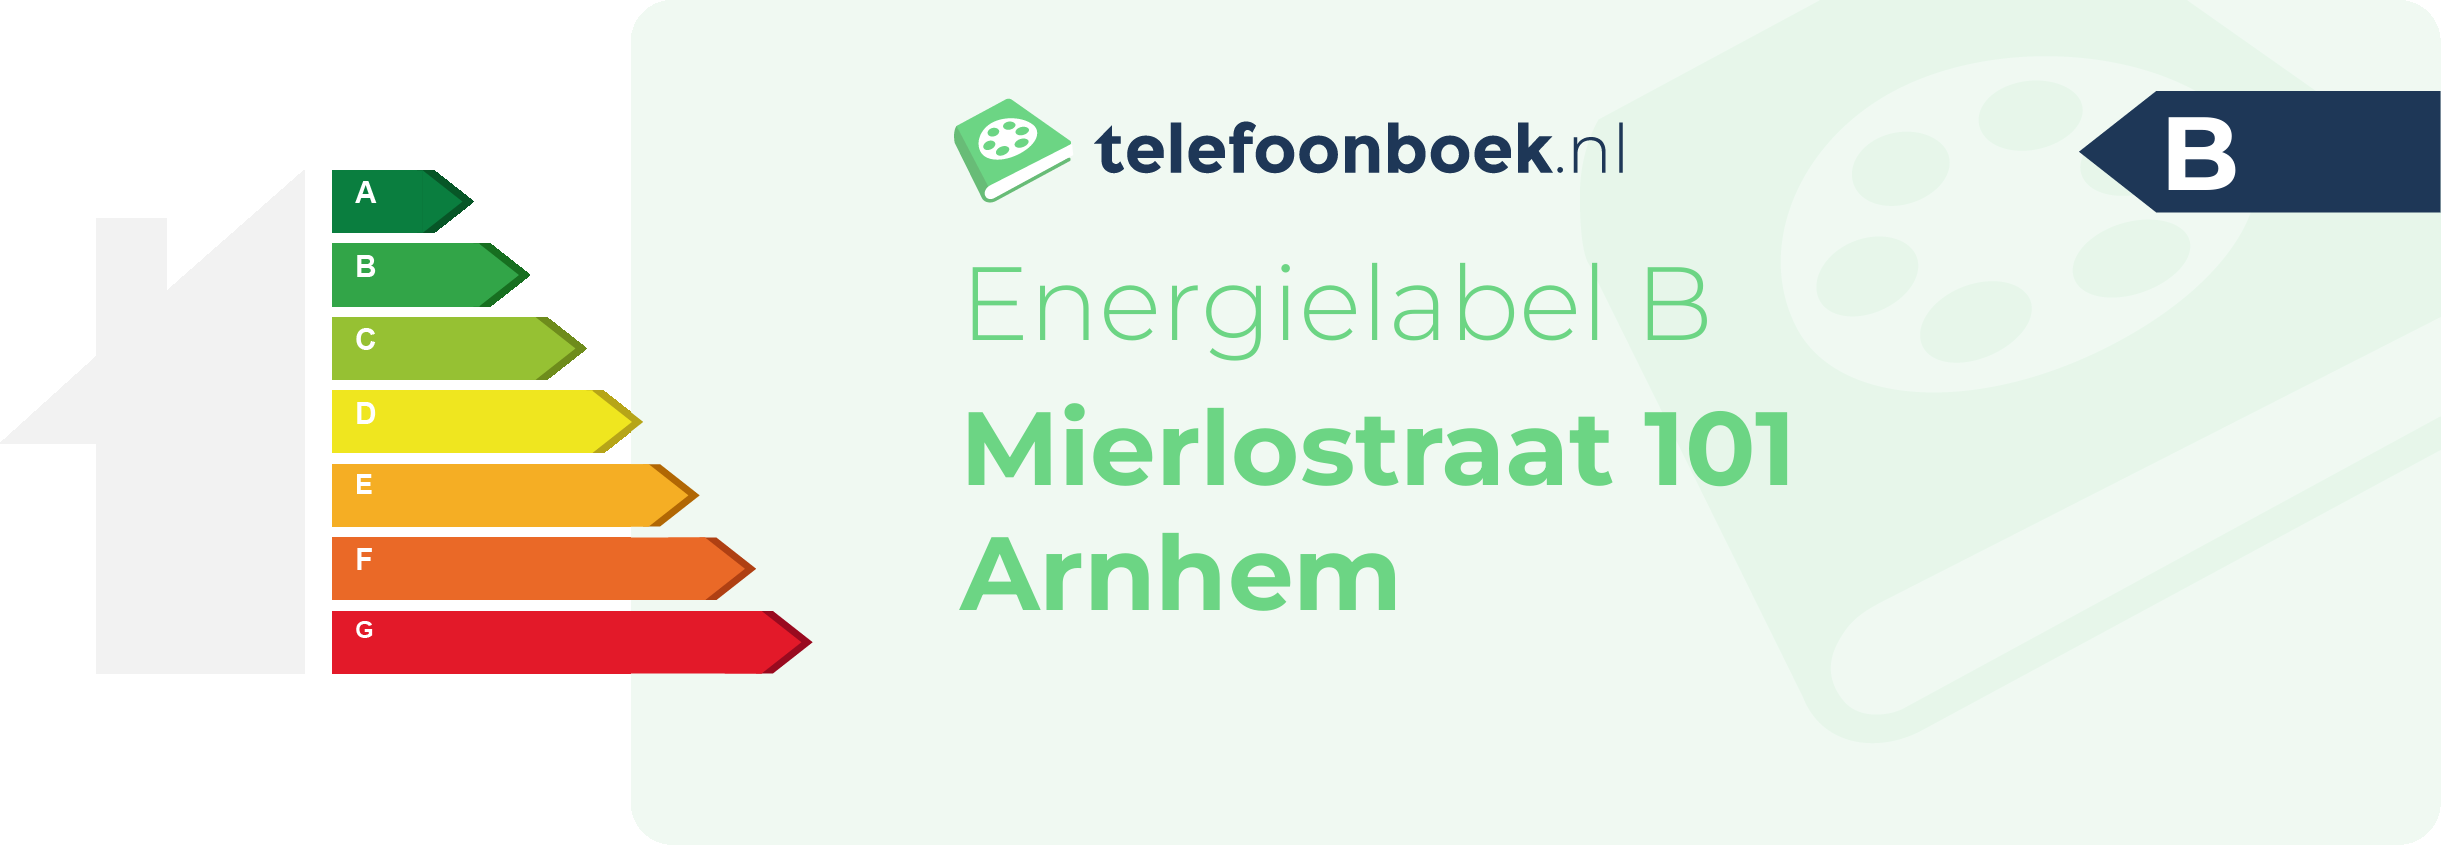 Energielabel Mierlostraat 101 Arnhem